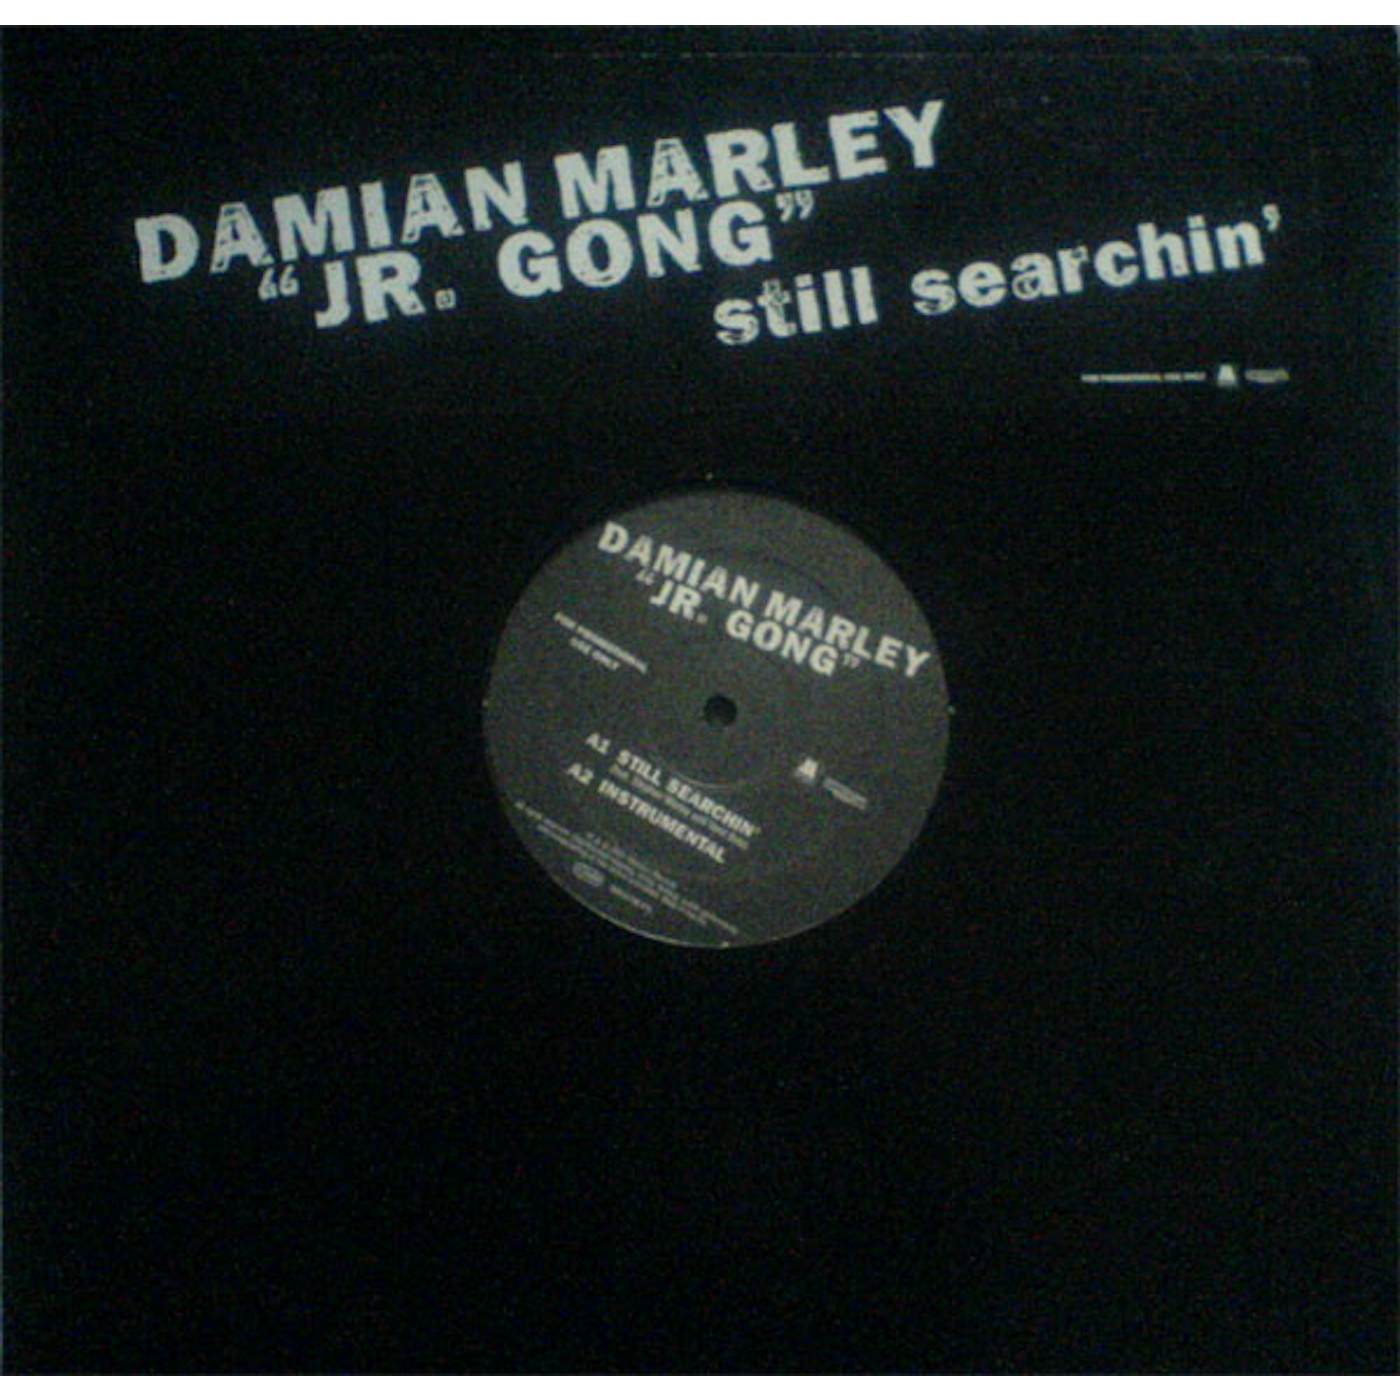 Damian Marley STILL SEARCHIN' Vinyl Record